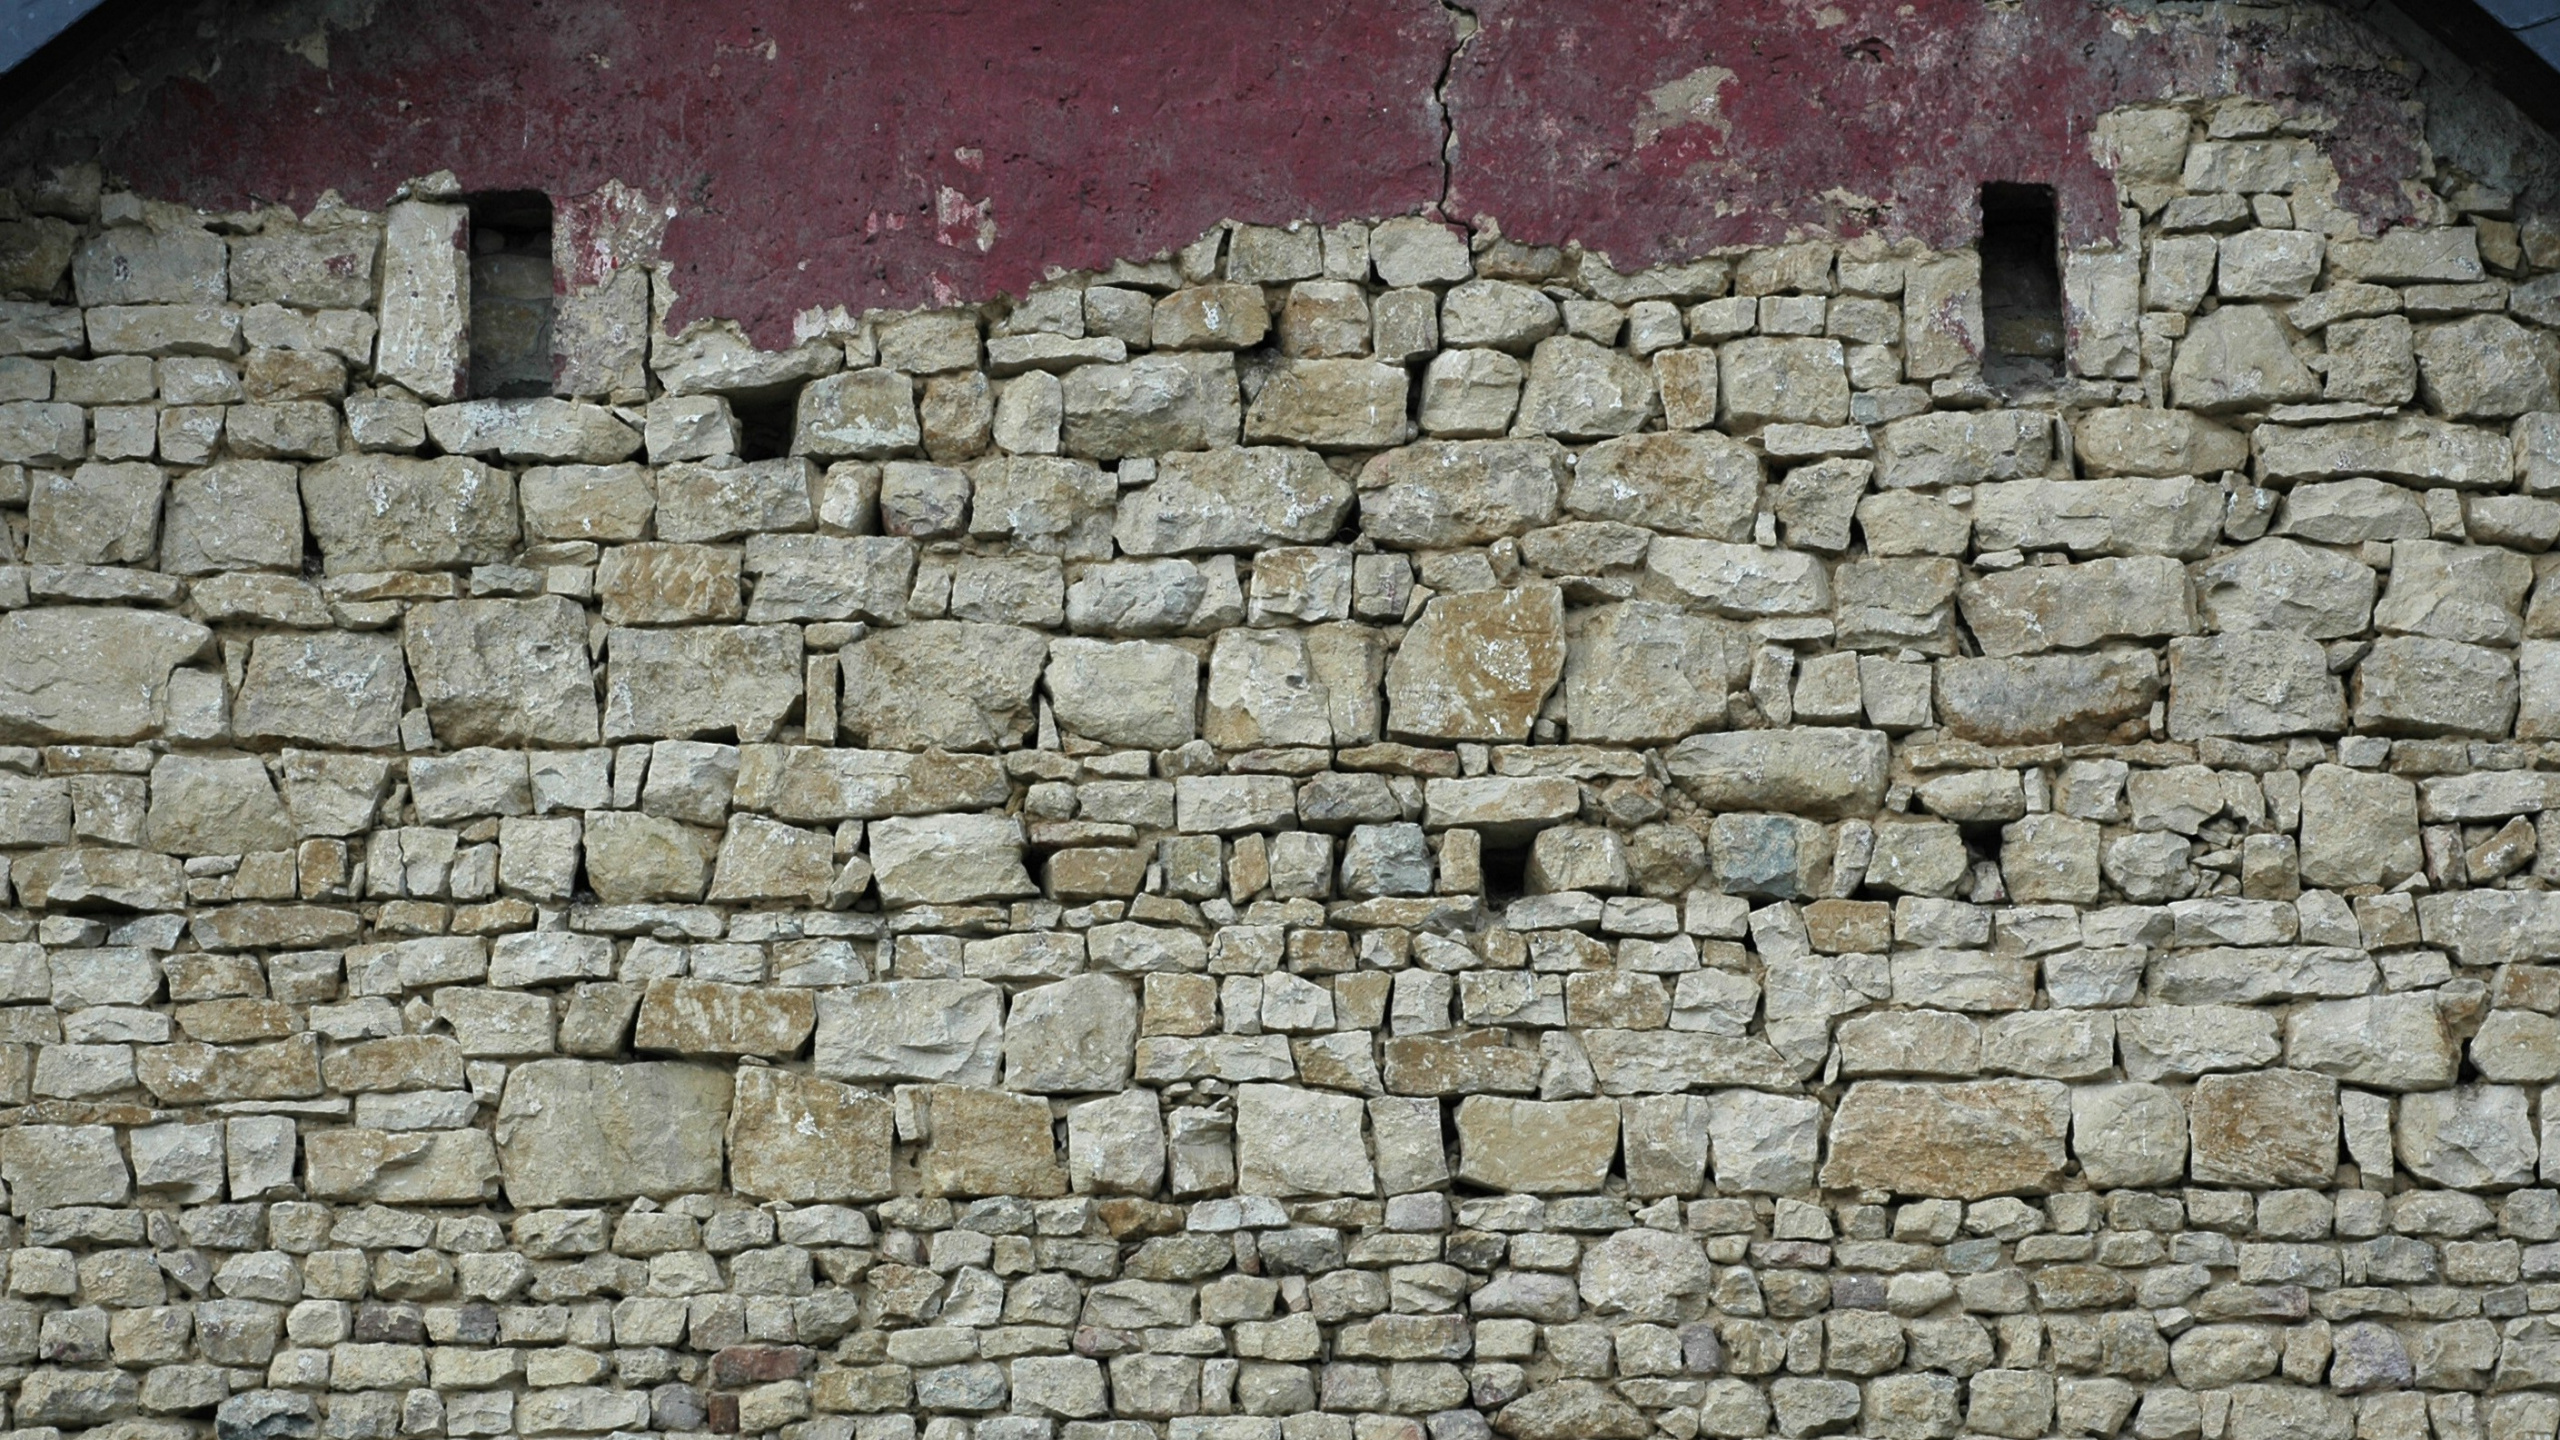 石壁, 砌砖, 砖, 砖石, 鹅卵石 壁纸 2560x1440 允许